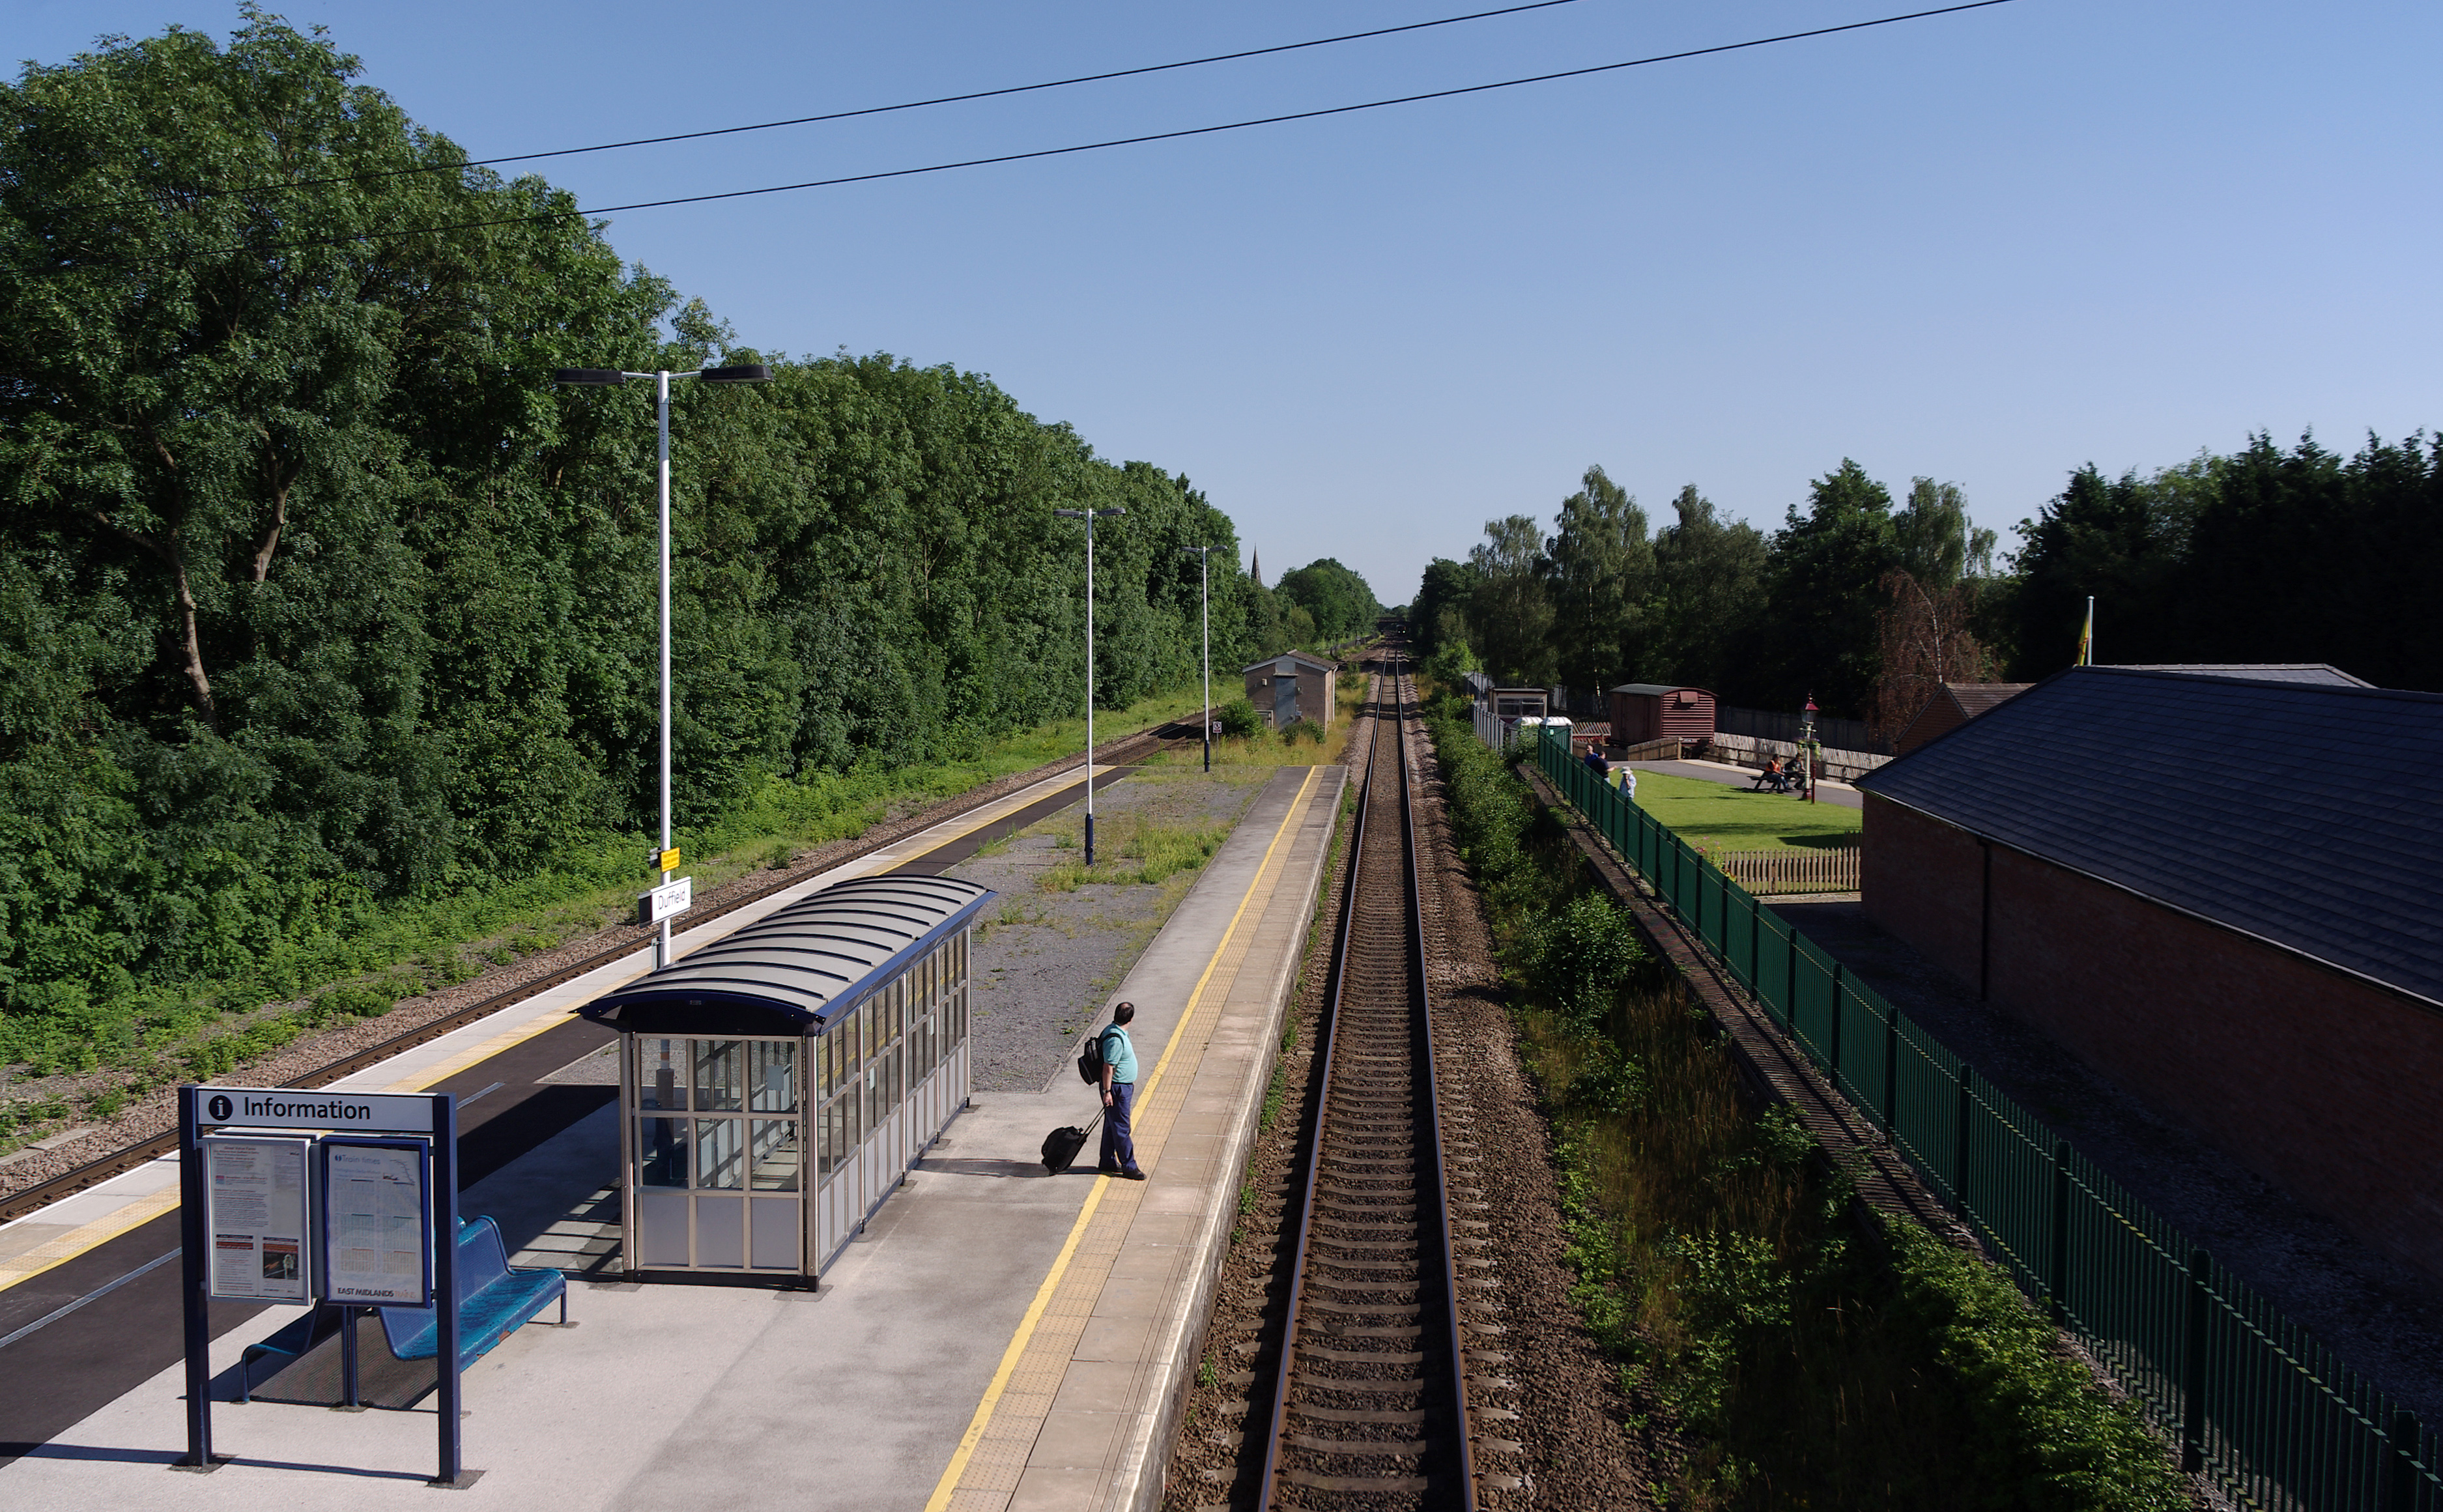 Duffield railway station MMB 04